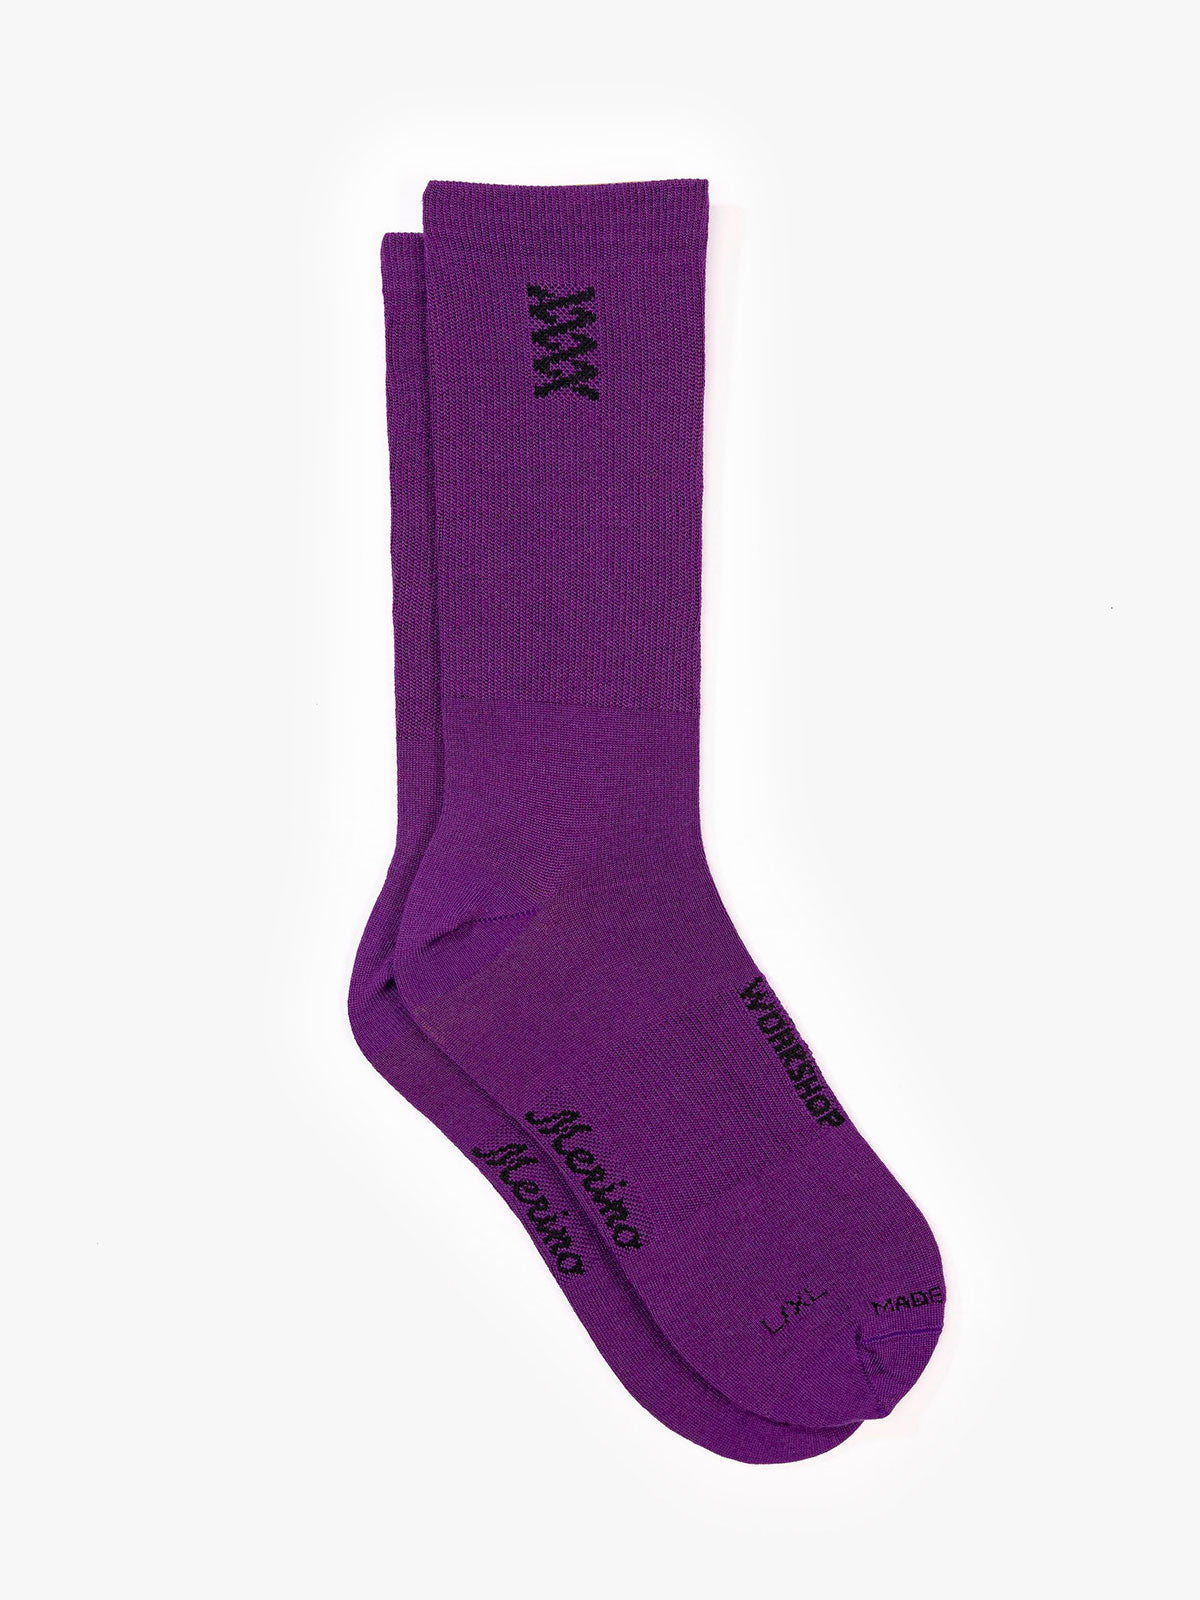 Mission Pro Wool Socks von Mission Workshop - Wetterfeste Taschen & Technische Bekleidung - San Francisco & Los Angeles - Für die Ewigkeit gebaut - Garantiert